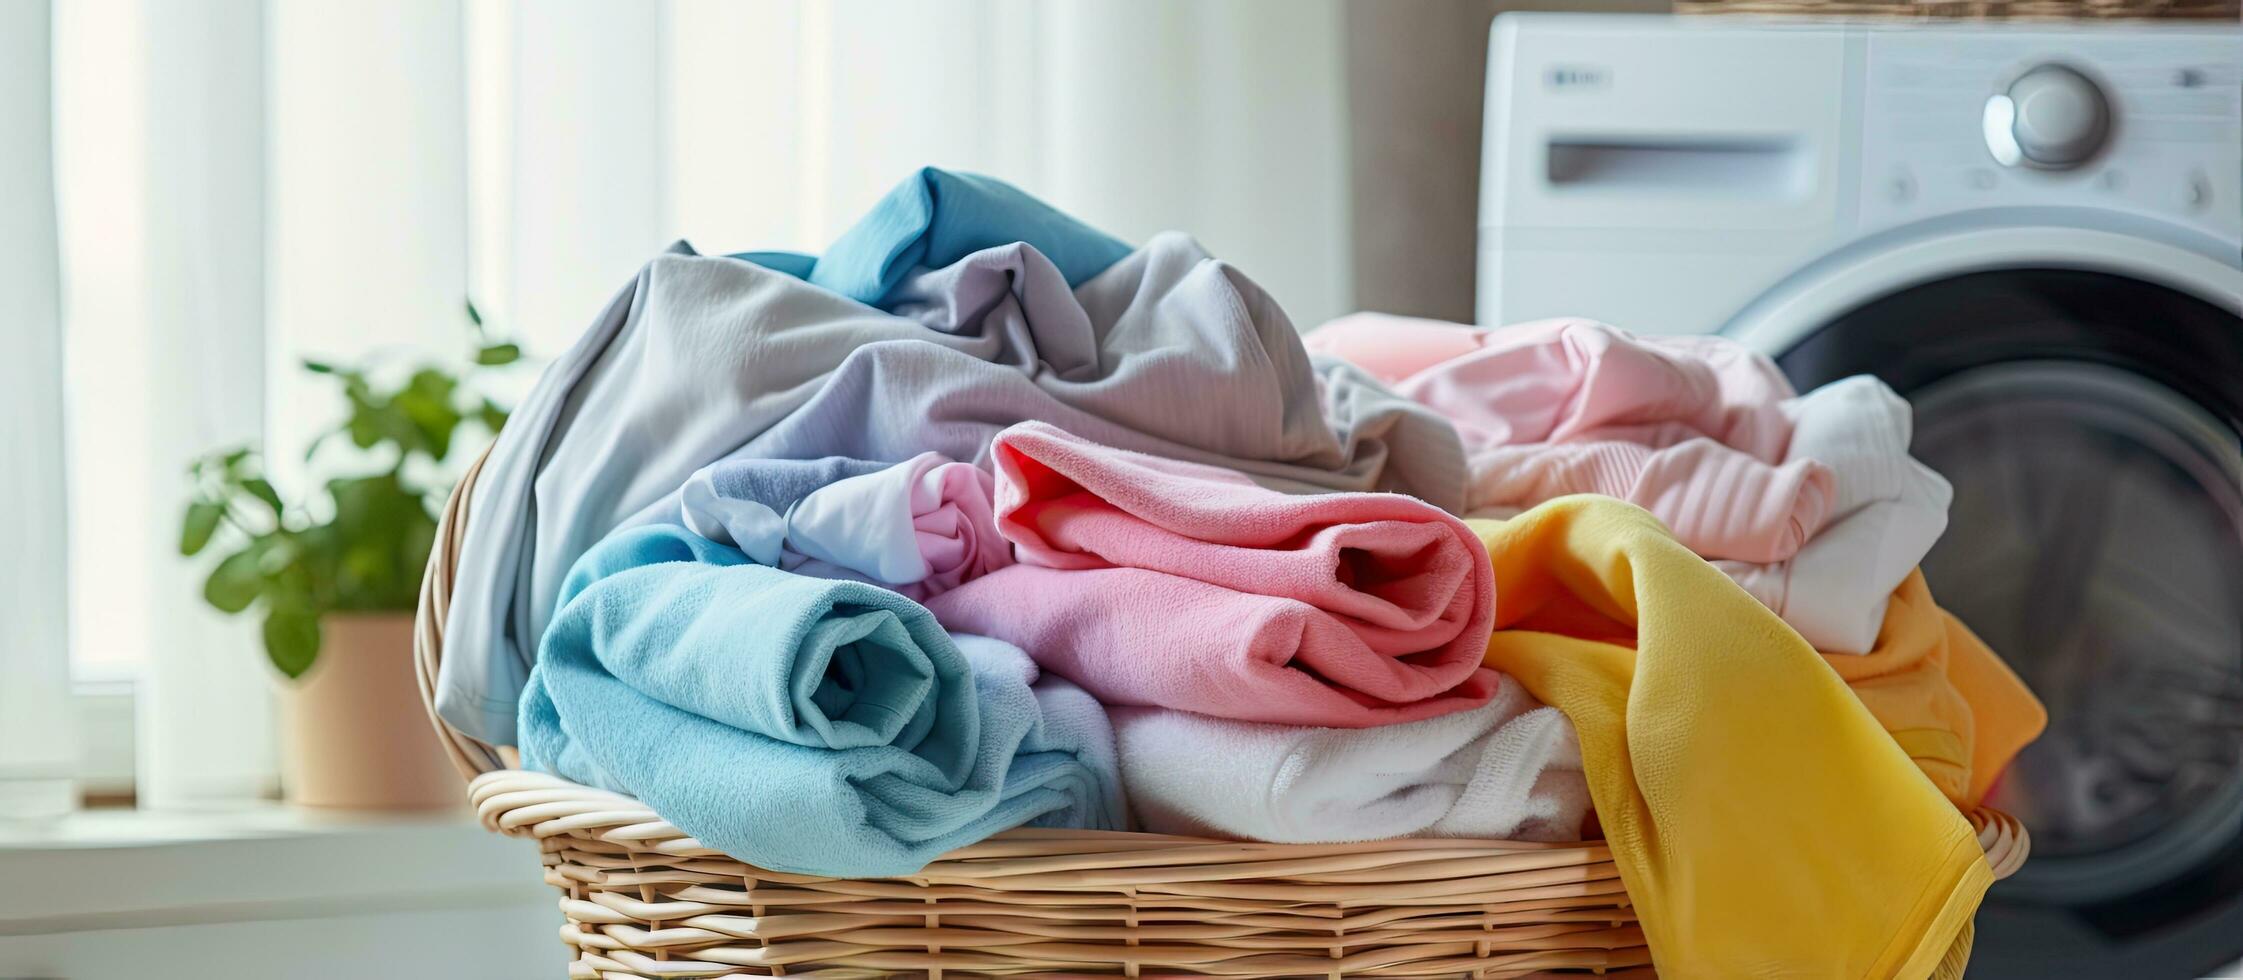 la lessive machine rempli avec coloré les serviettes et blanchisserie porte ouvert photo